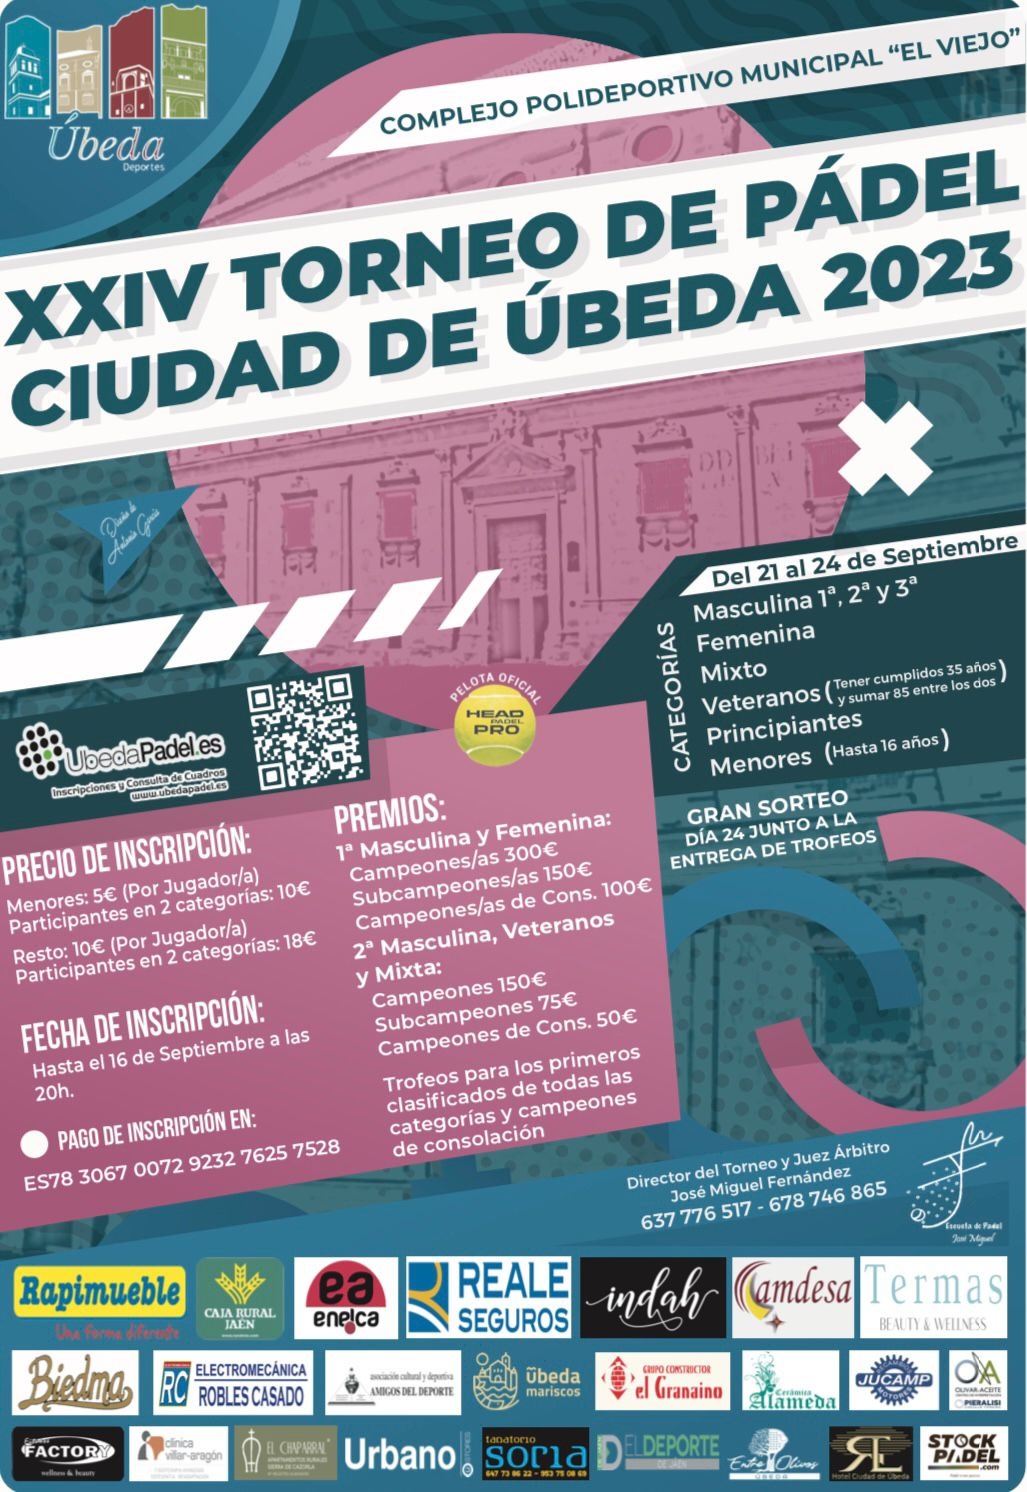 Torneo Ciudad de beda 2023